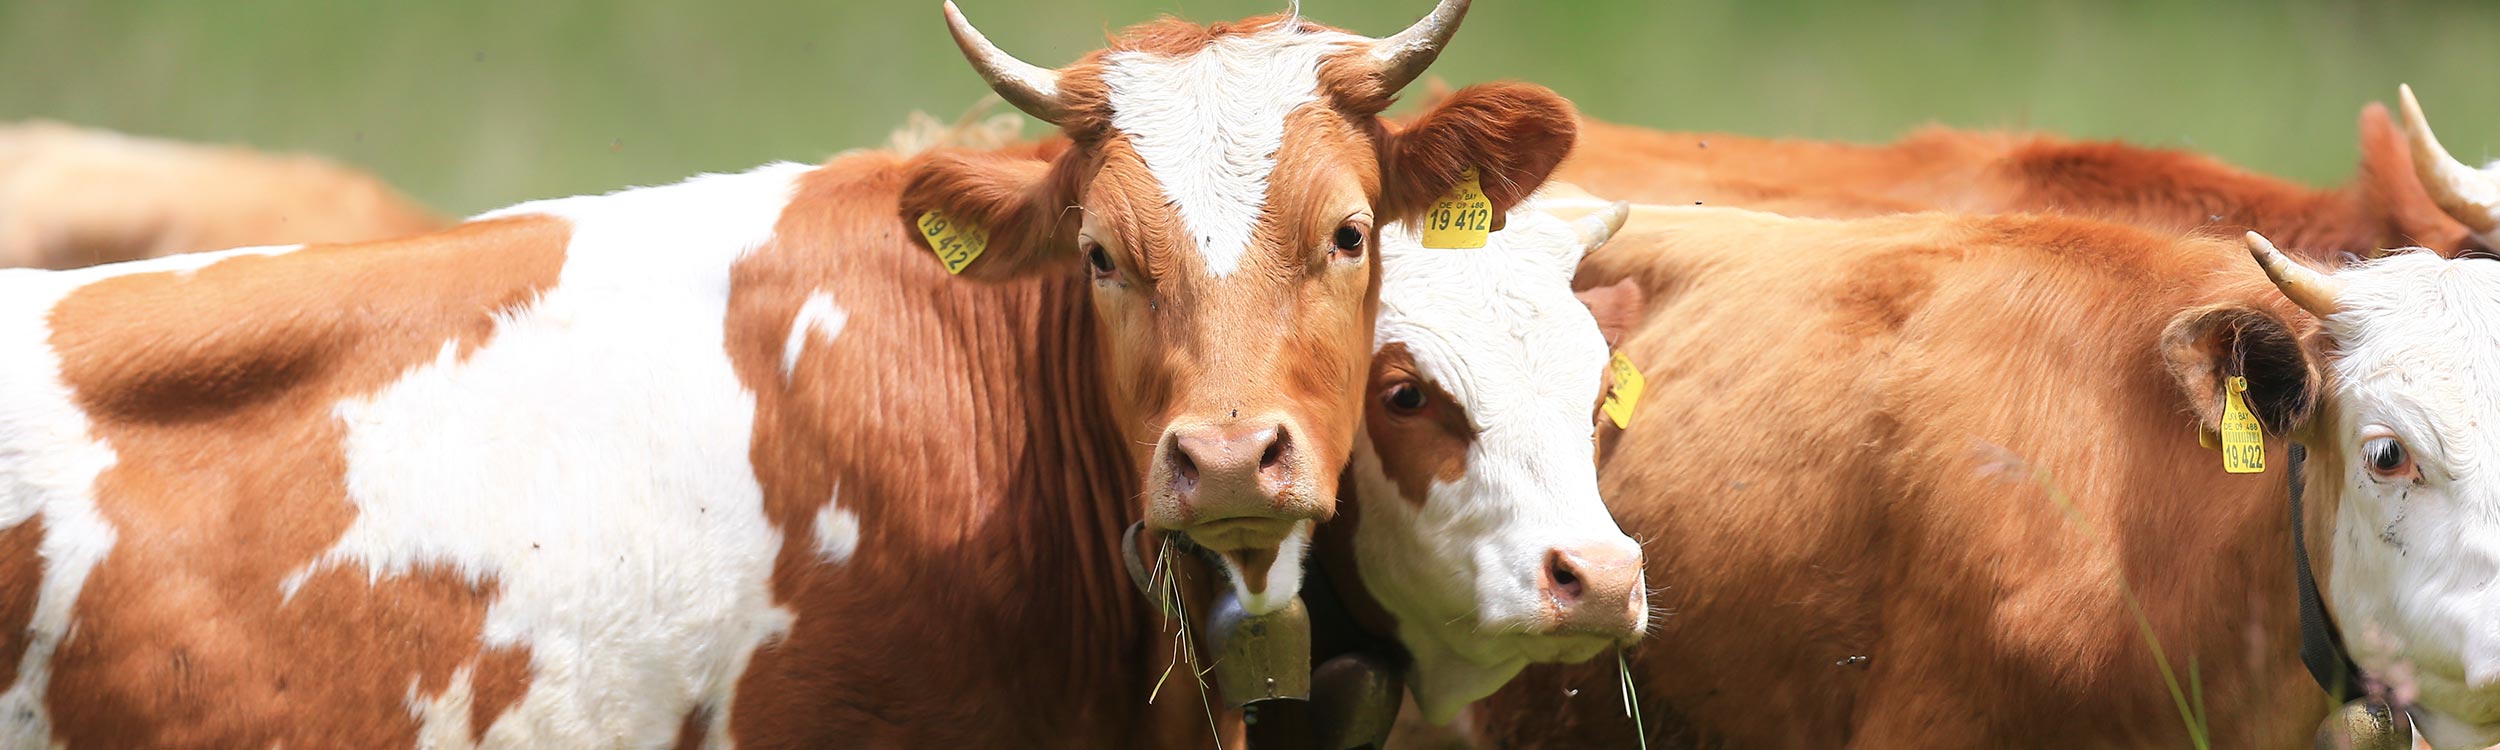 BayernOX - Qualitätsgarantie für bestes Rindfleisch aus der Region Oberbayern